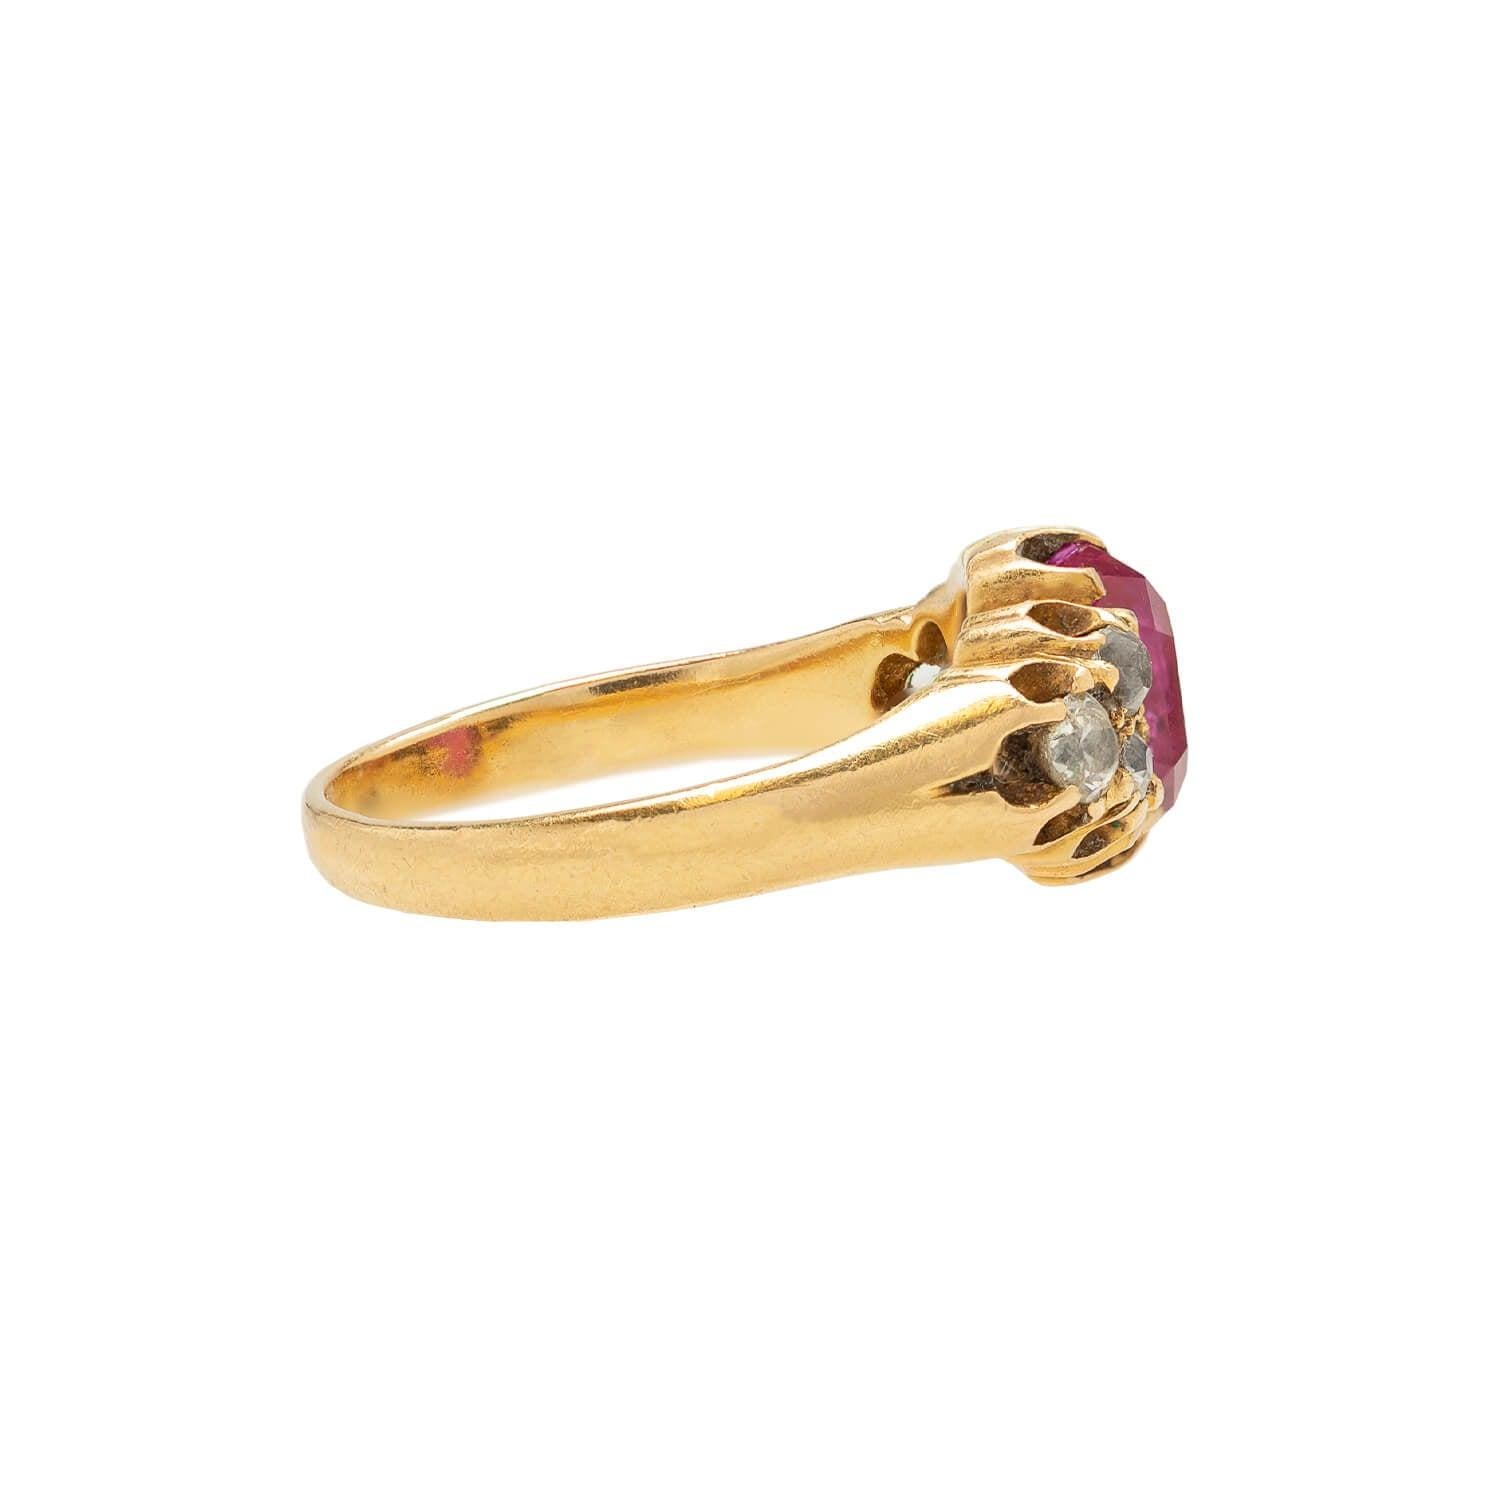 Ein wunderschöner Edelsteinring aus der viktorianischen Ära (ca. 1890er Jahre)! Dieses wunderschöne Stück ist aus 18 Karat Gelbgold gefertigt und zeigt einen wunderschönen Rubin inmitten funkelnder Diamanten. In der Mitte befindet sich ein einzelner